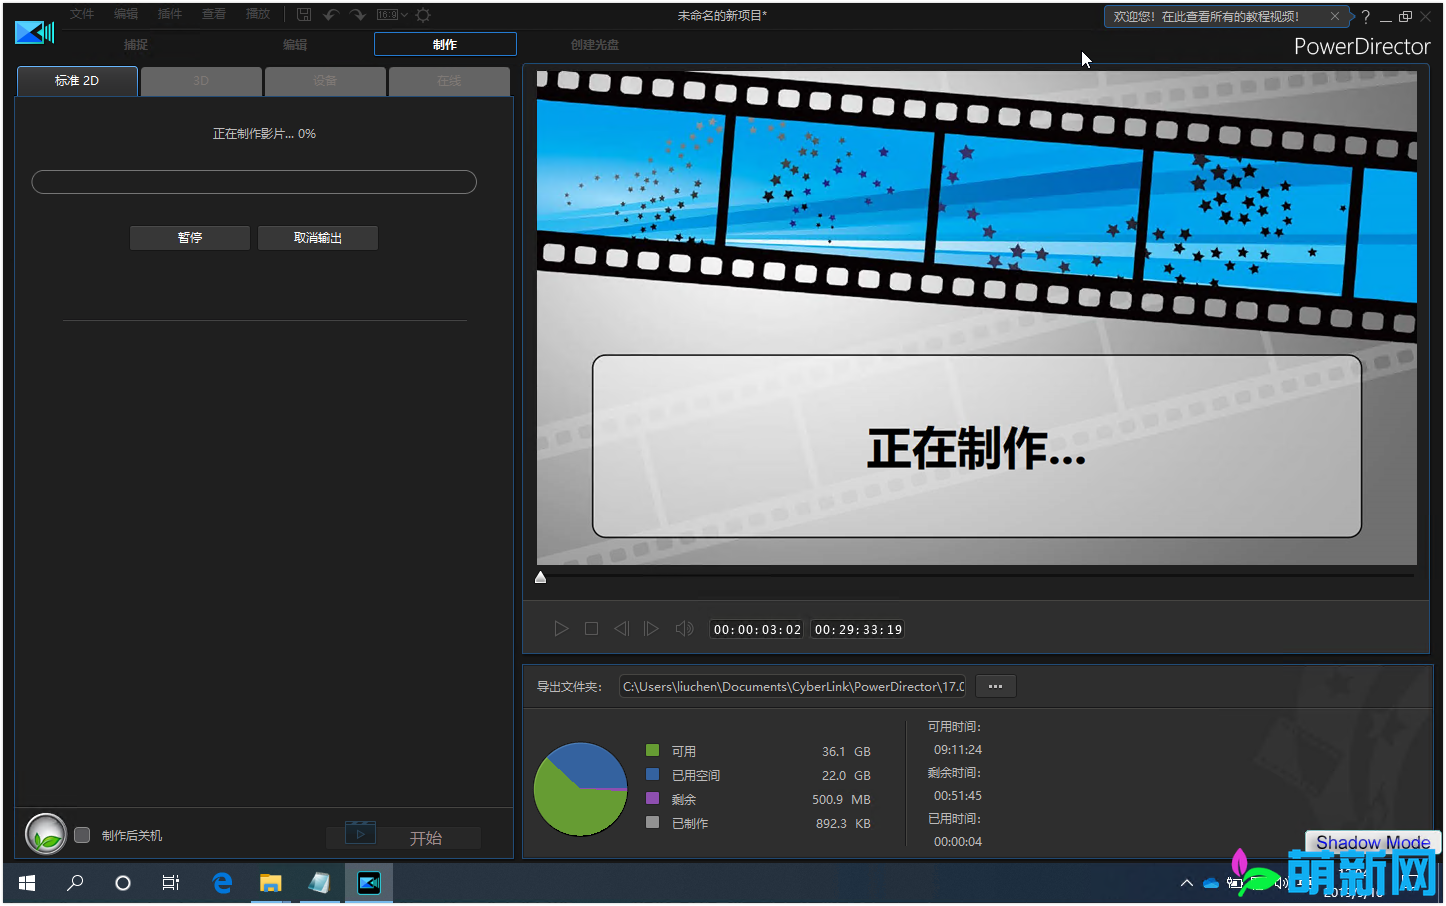 威力导演CyberLink PowerDirector 17.6.3125.0 Win多语言中文版 强大的视频软件下载插图7